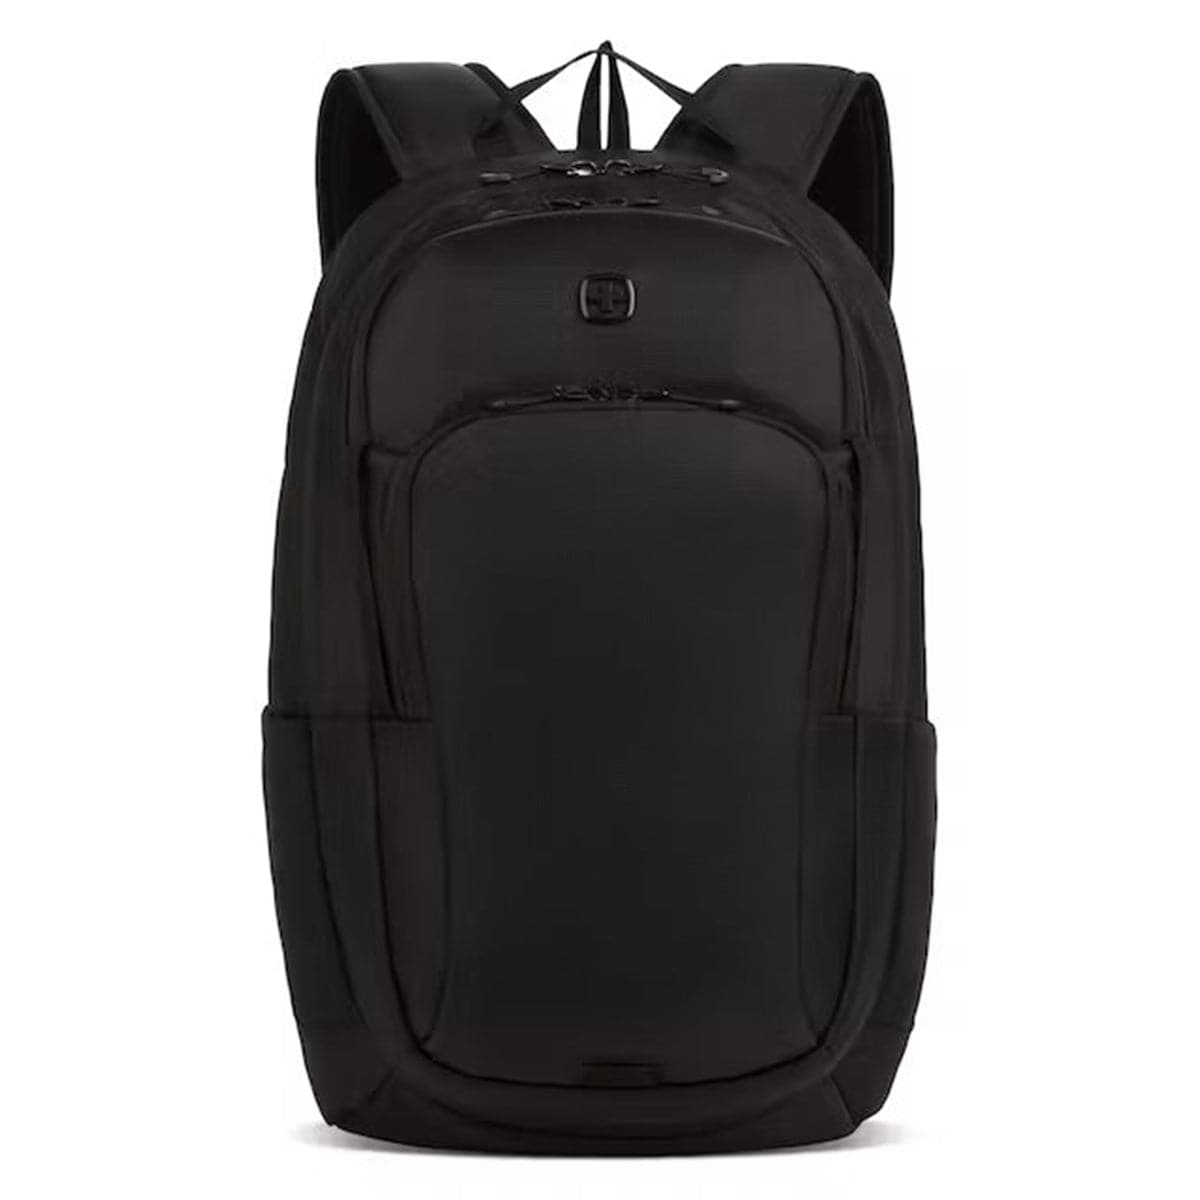 Swissgear 8171 16 Laptop Backpack Black